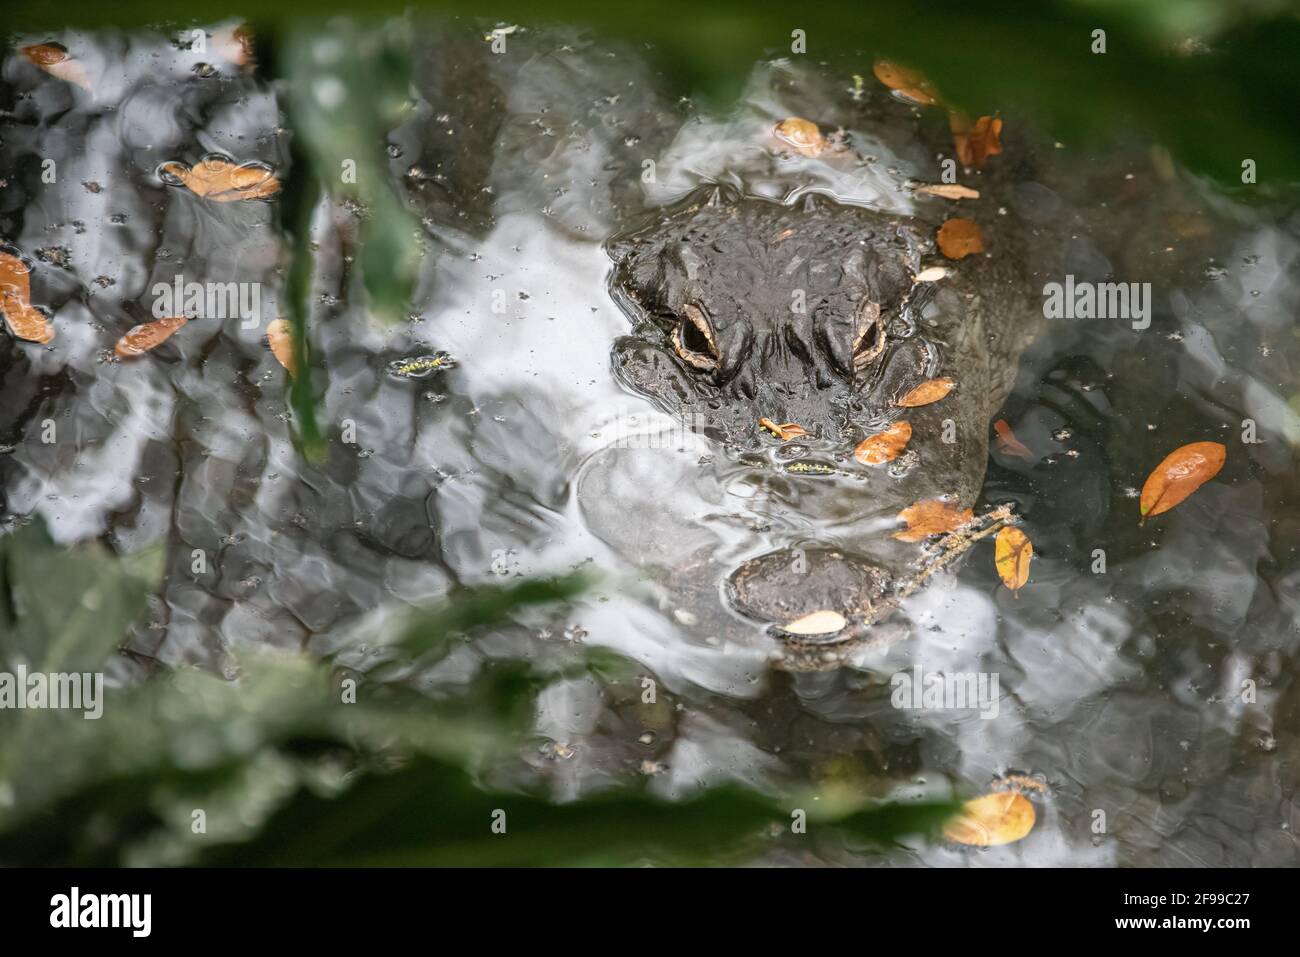 Alligator camouflé (Alligator mississippiensis) avec les yeux et la pointe de la musette émergeant de la surface d'un étang à St. Augustine, Floride. (ÉTATS-UNIS) Banque D'Images